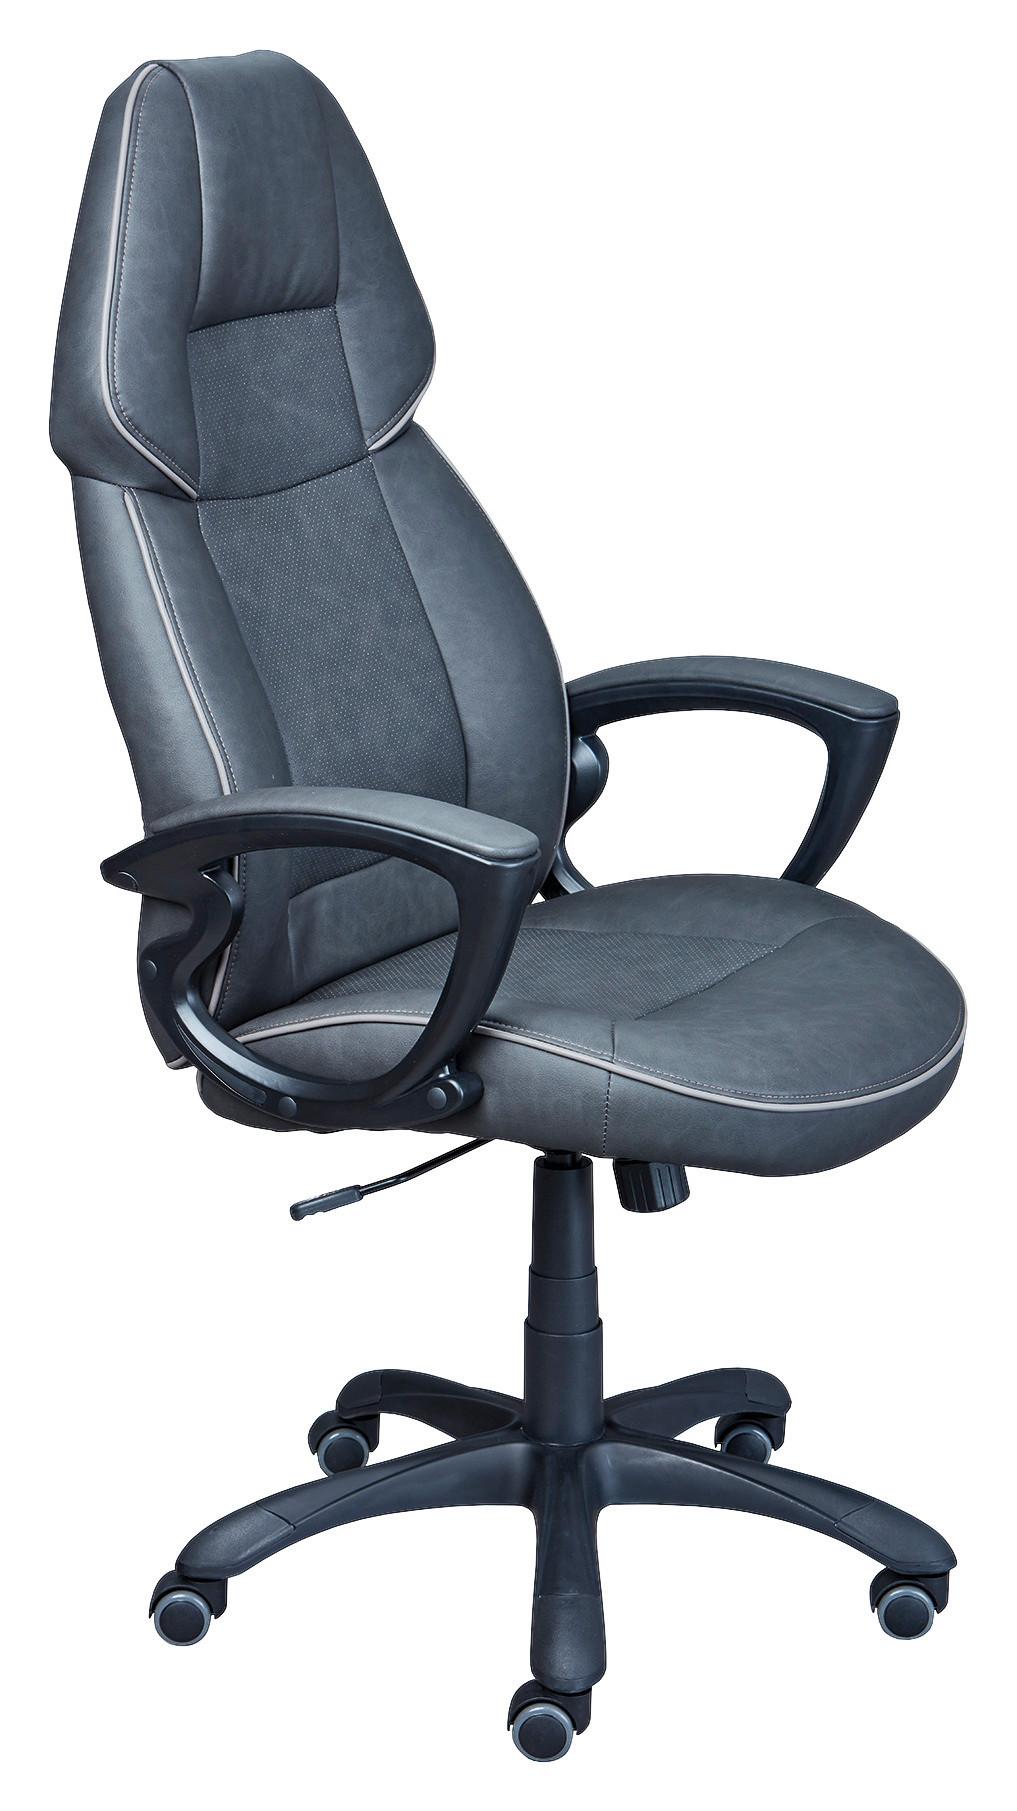 Otoční Židle Titanest - šedá/černá, Konvenční, textil/plast (65/123/71cm) - MID.YOU